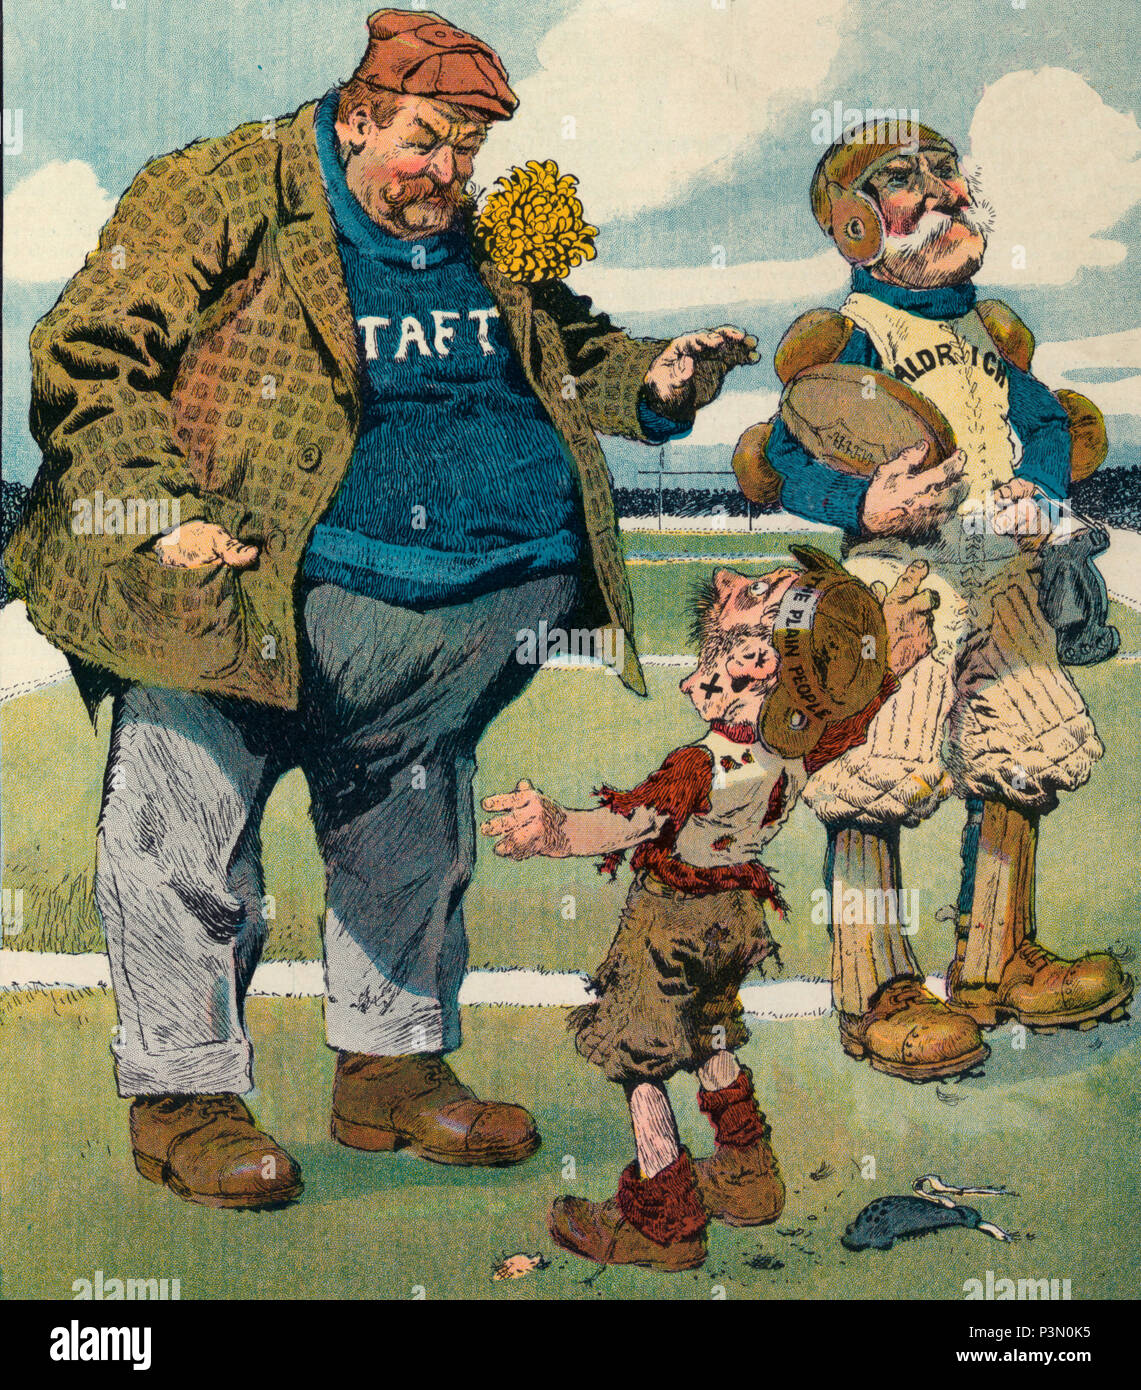 L'illustration montre un petit joueur de football portant la mention "la Plaine" de dire le président Taft, en tant que juge-arbitre, qu'un joueur marqués 'Aldrich' pour l'équipe adverse joue un sale jeu, d'enfreindre les règles et de tricherie, mais pénalise jamais Taft lui pour ses actions. Caricature politique, vers 1909 Banque D'Images